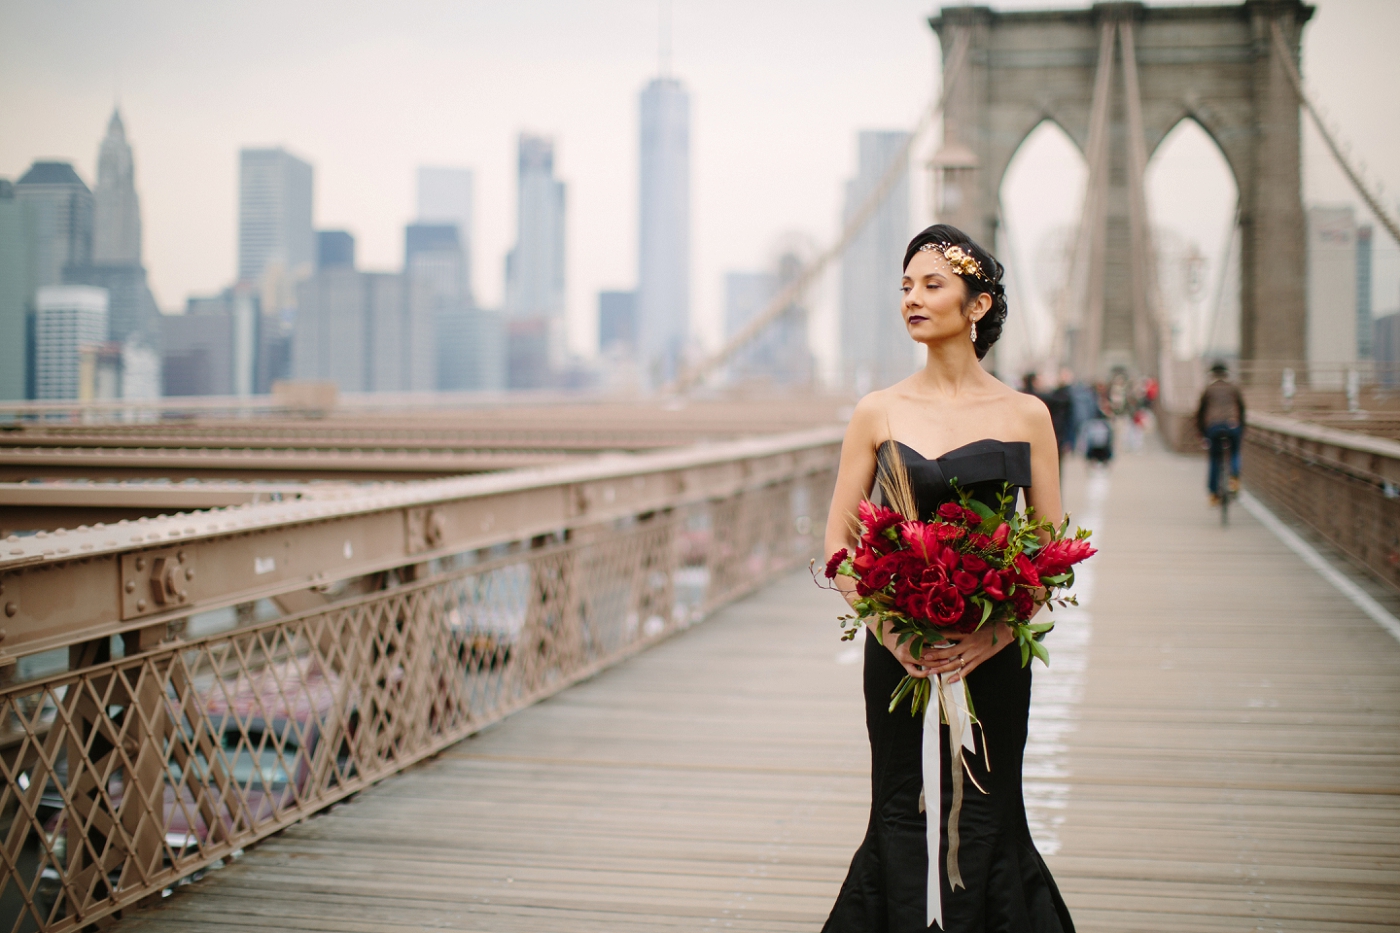 Black wedding dress Brooklyn bridge by Samantha Clarke Photography